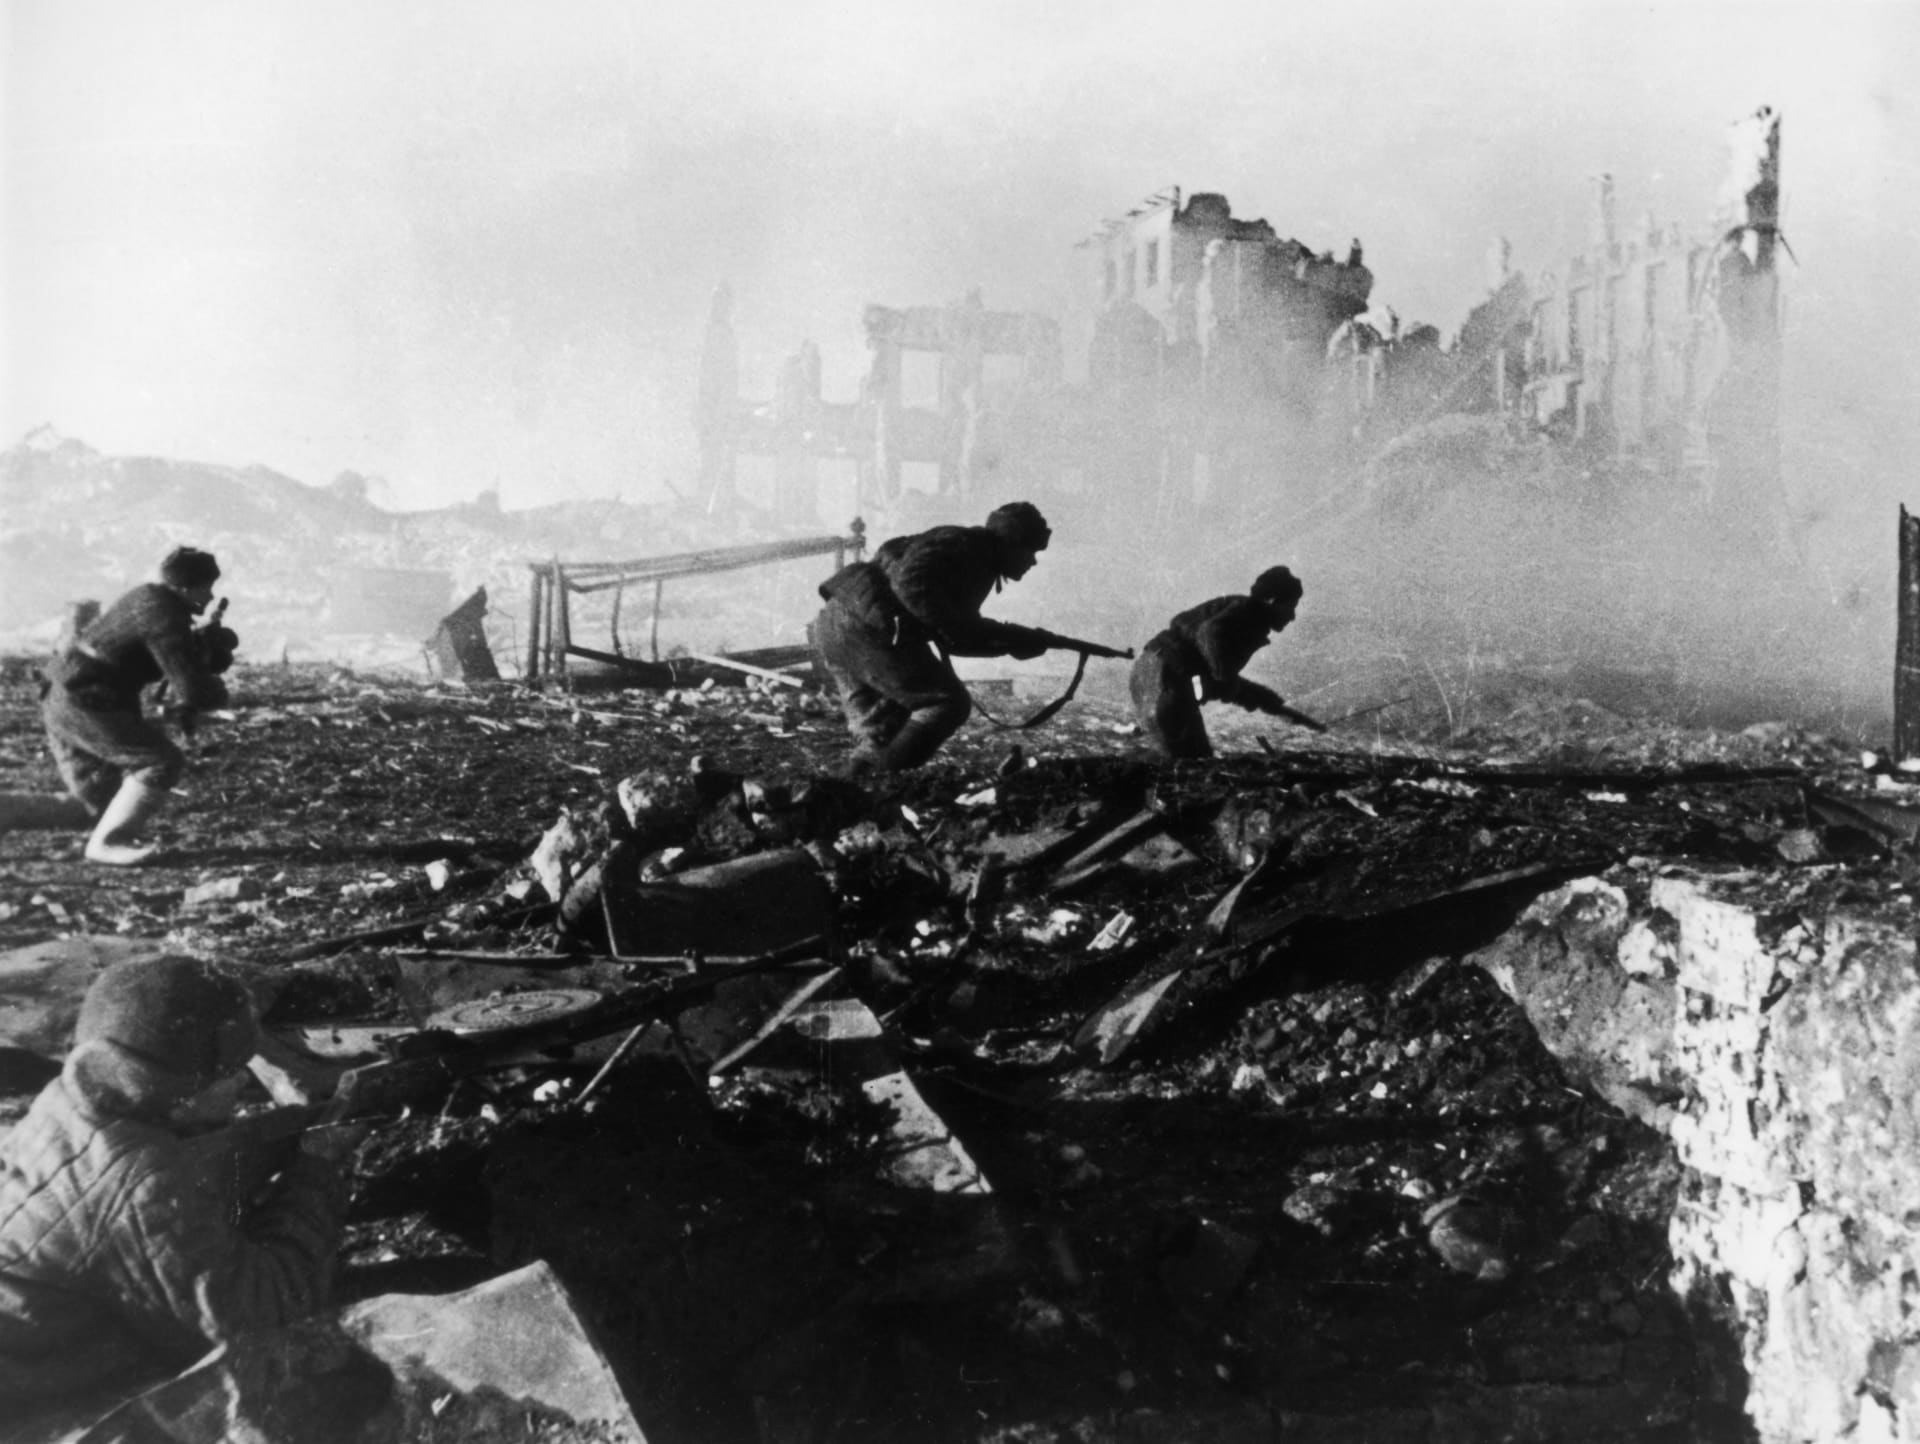 Bitva u Stalingradu byla jedním z největších a nejkrvavějších vojenských střetnutí druhé světové války